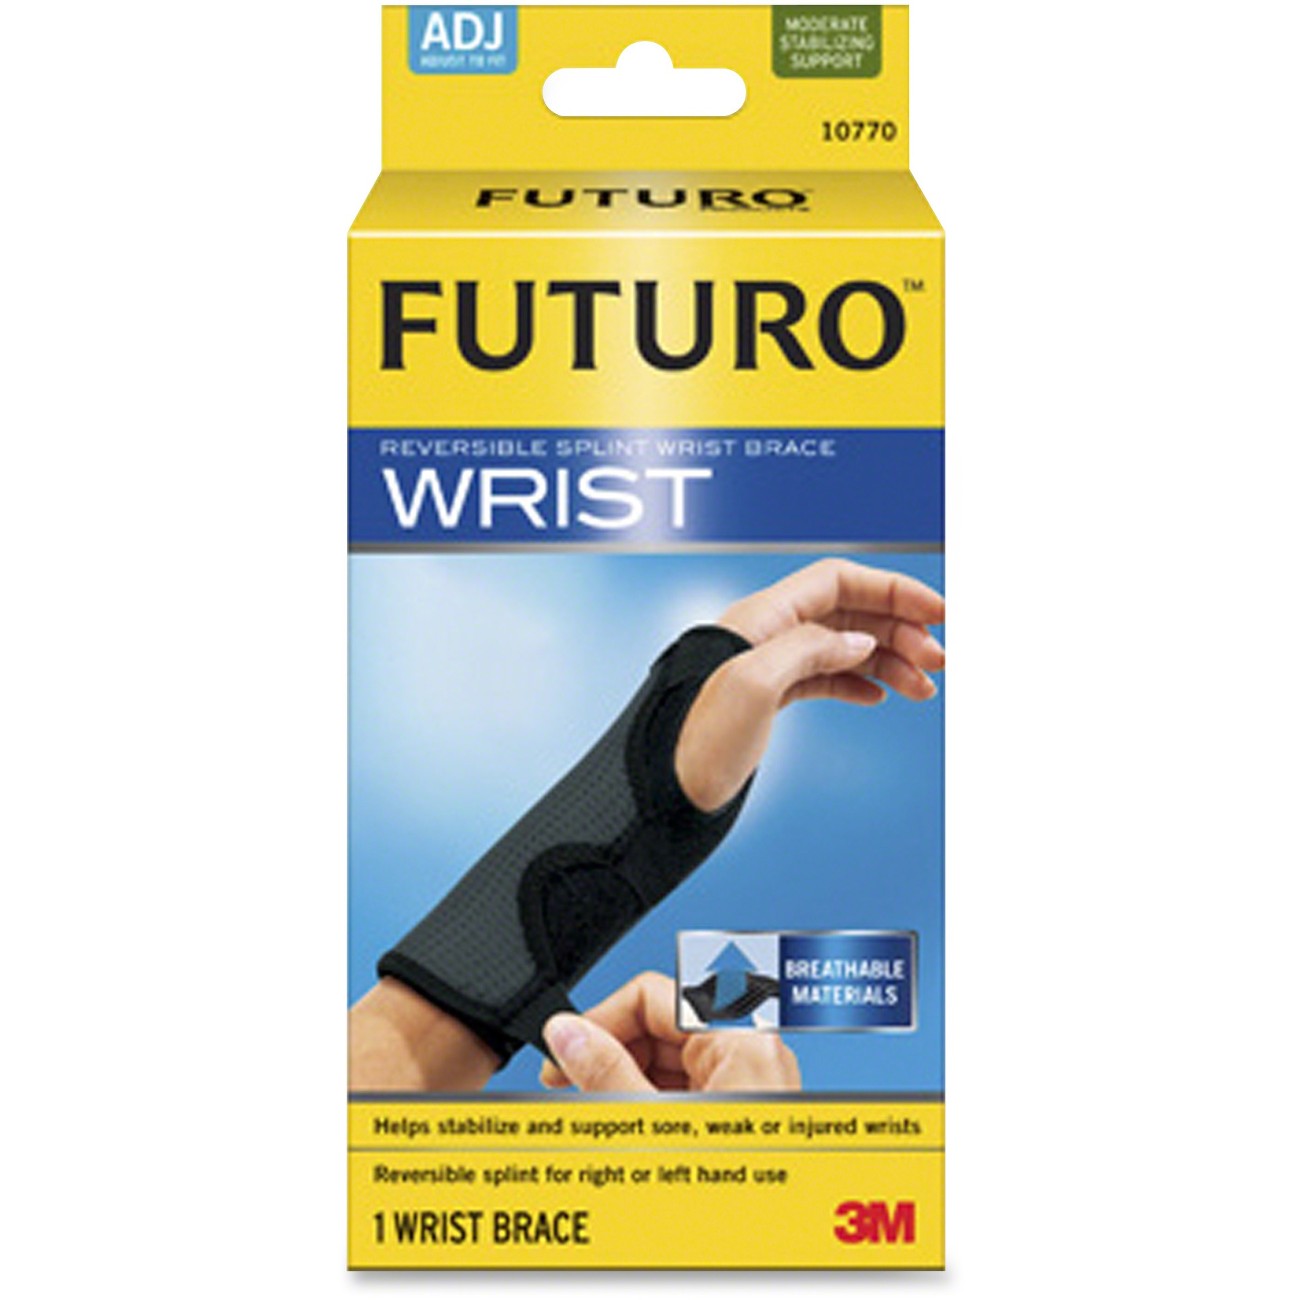 FUTURO&trade; Reversible Splint Wrist Brace